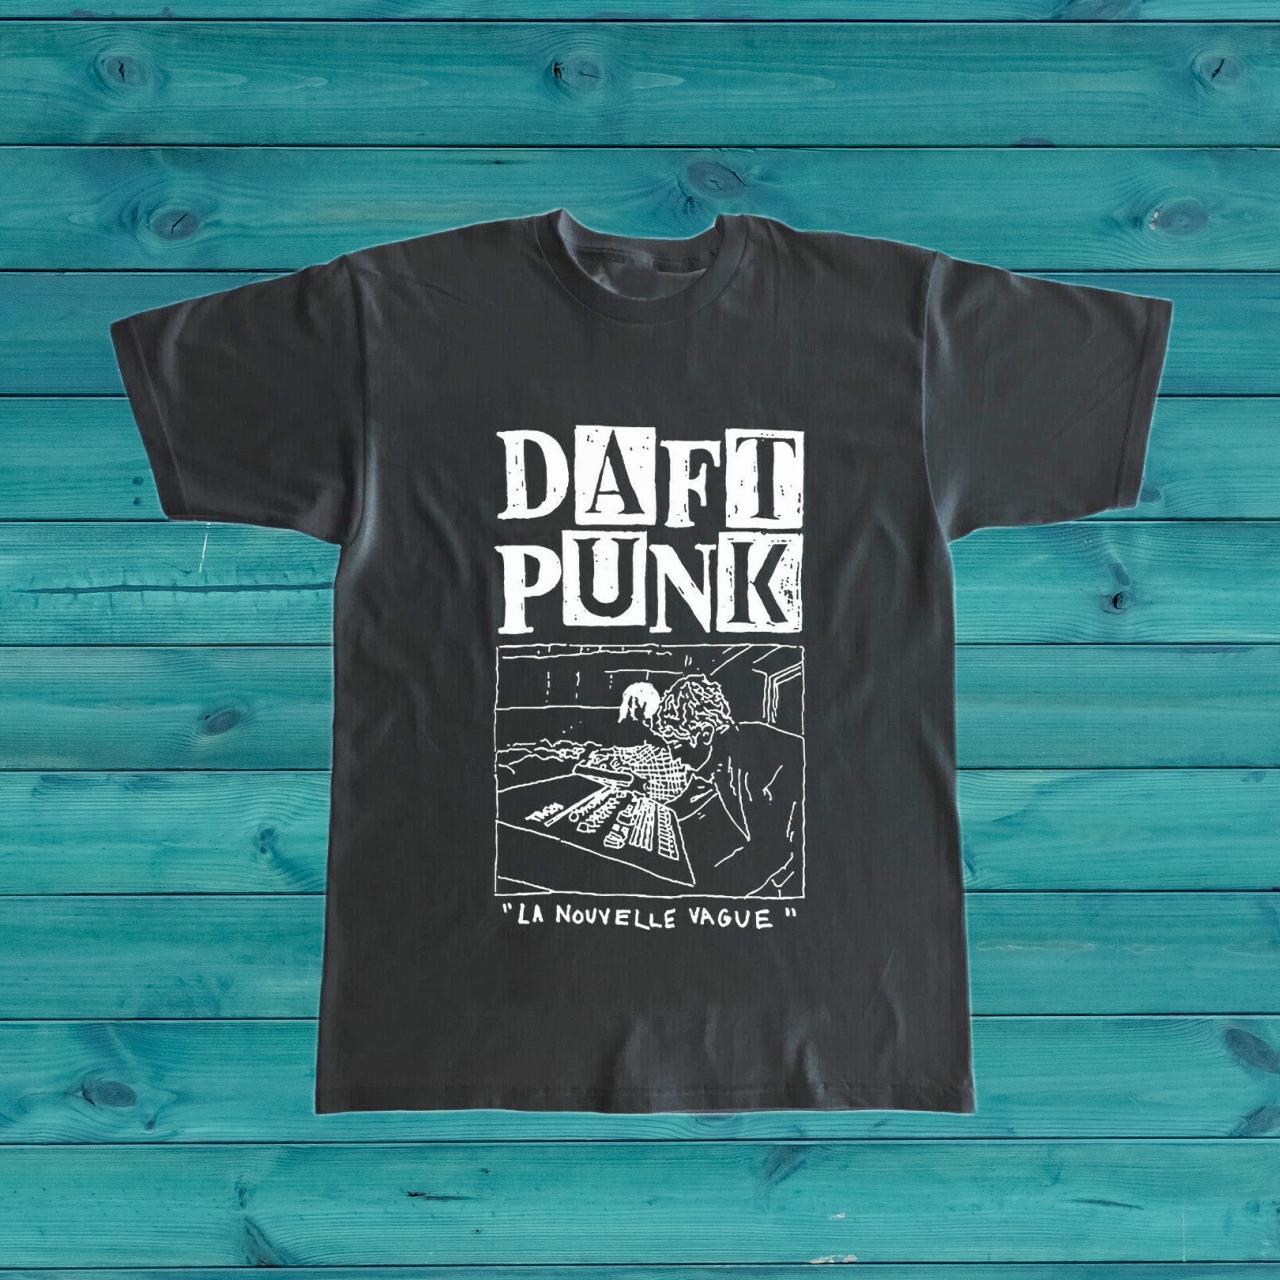 Punk is not Dead, Daft Punk is.